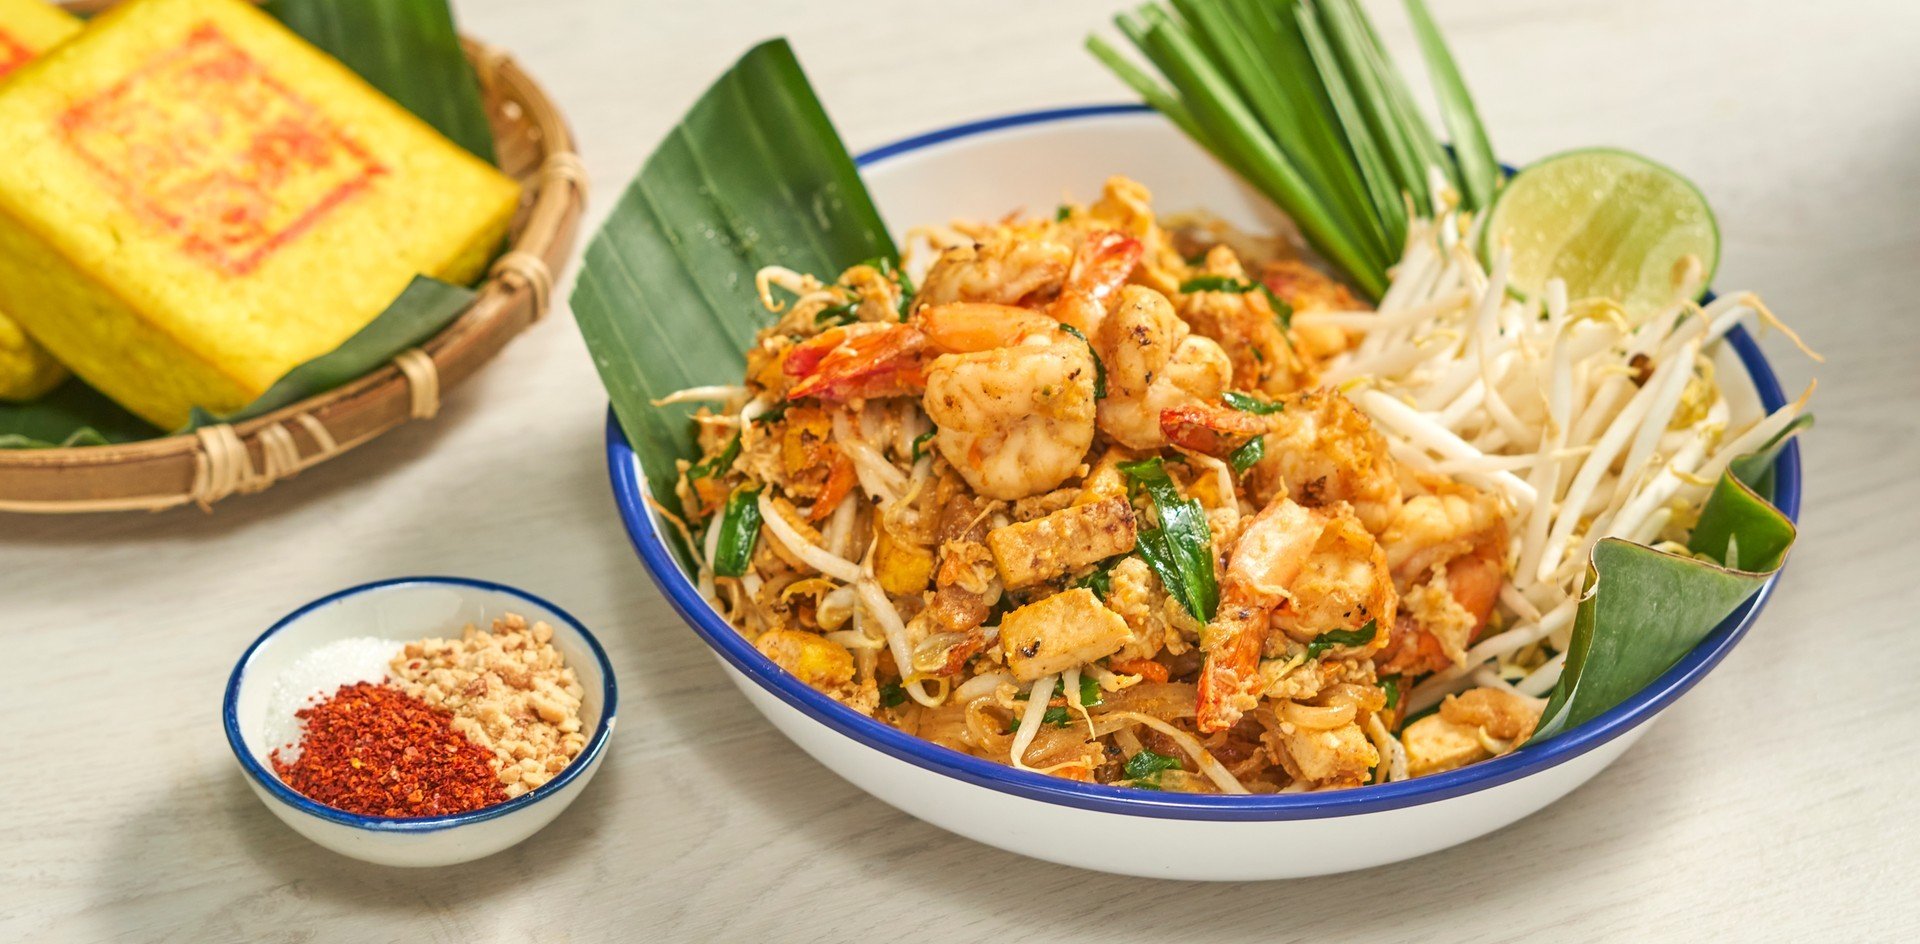 วิธีทำ “ผัดไทยกุ้งสด” เมนูอาหารจานเดียวสูตรเด็ด พร้อมสูตรซอสผัดไทย!